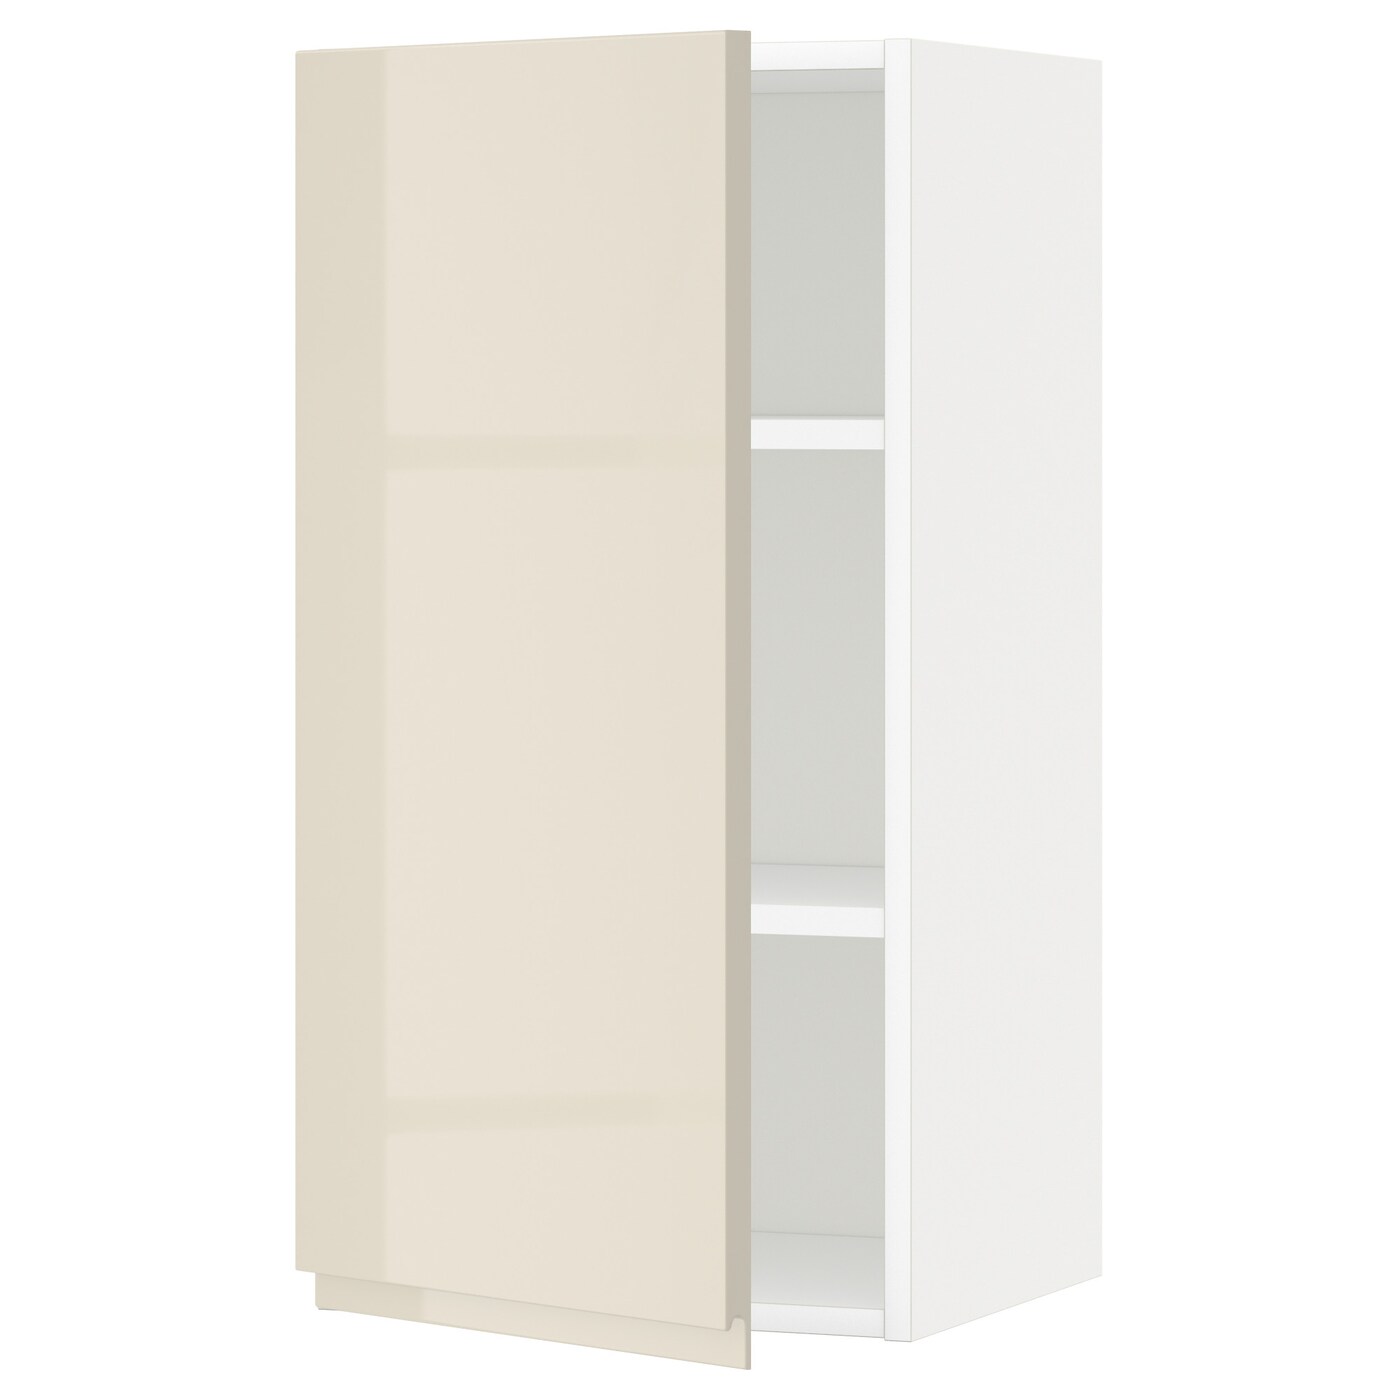 Навесной шкаф с полкой - METOD IKEA/ МЕТОД ИКЕА, 80х40 см, белый/бежевый